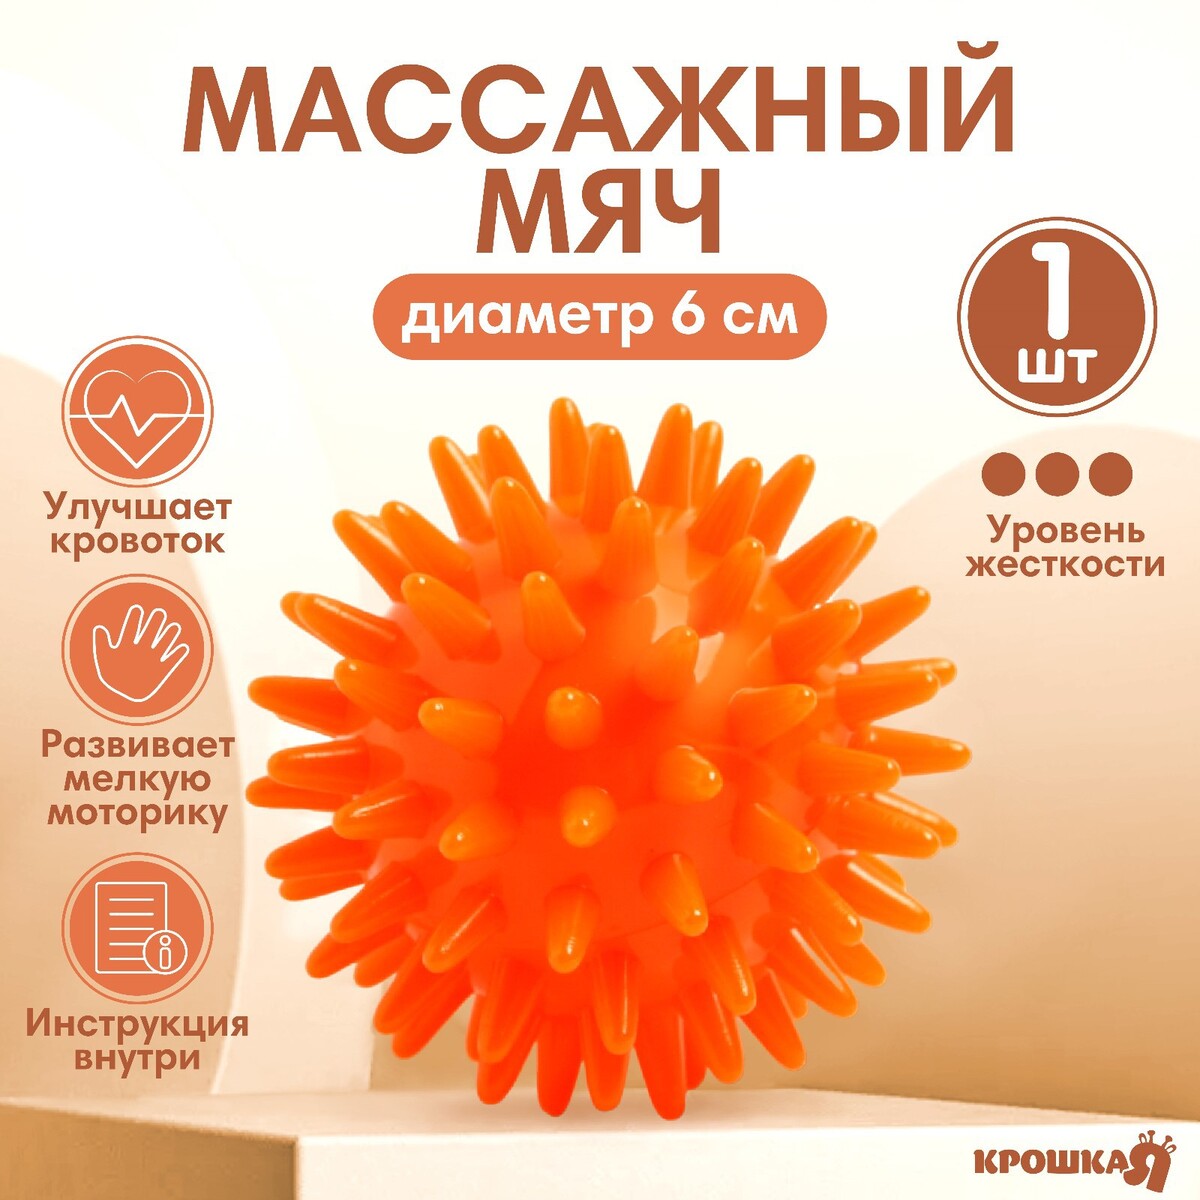 Мяч массажный ø6 см., цвет оранжевый, крошка я массажный мяч togu spiky massage ball 462500 01 or 00 оранжевый